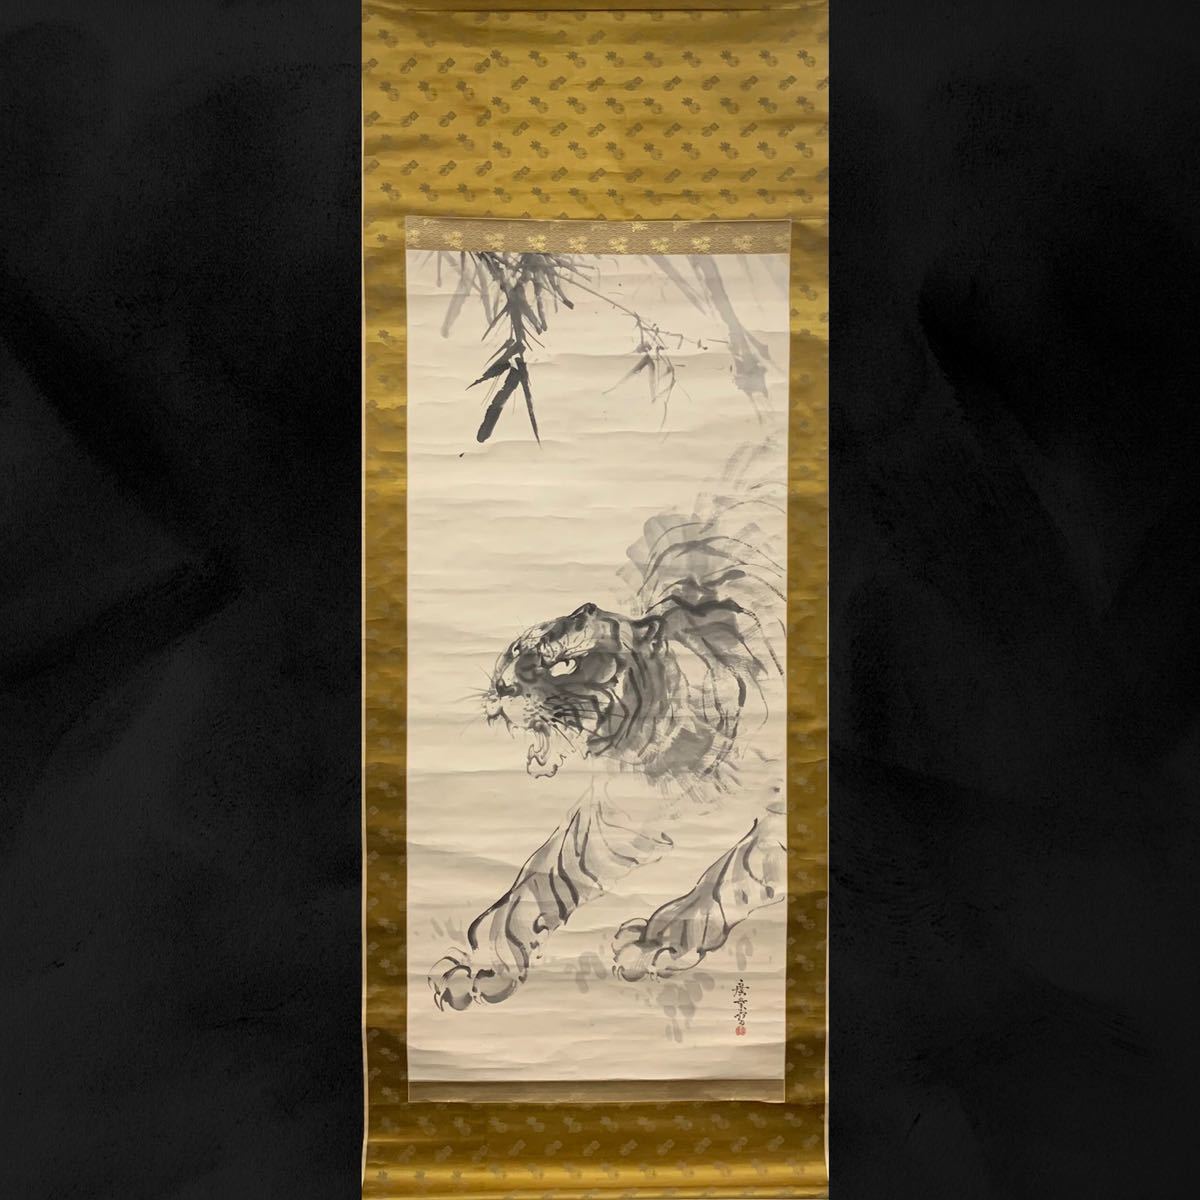 [Copiar] (Estribillo 06) Hiroyo Terasaki Tigre Pintura japonesa, pergamino colgante, pintura en tinta, período, misma caja, aprox. 200x76cm, cuadro, pintura japonesa, flores y pájaros, pájaros y bestias